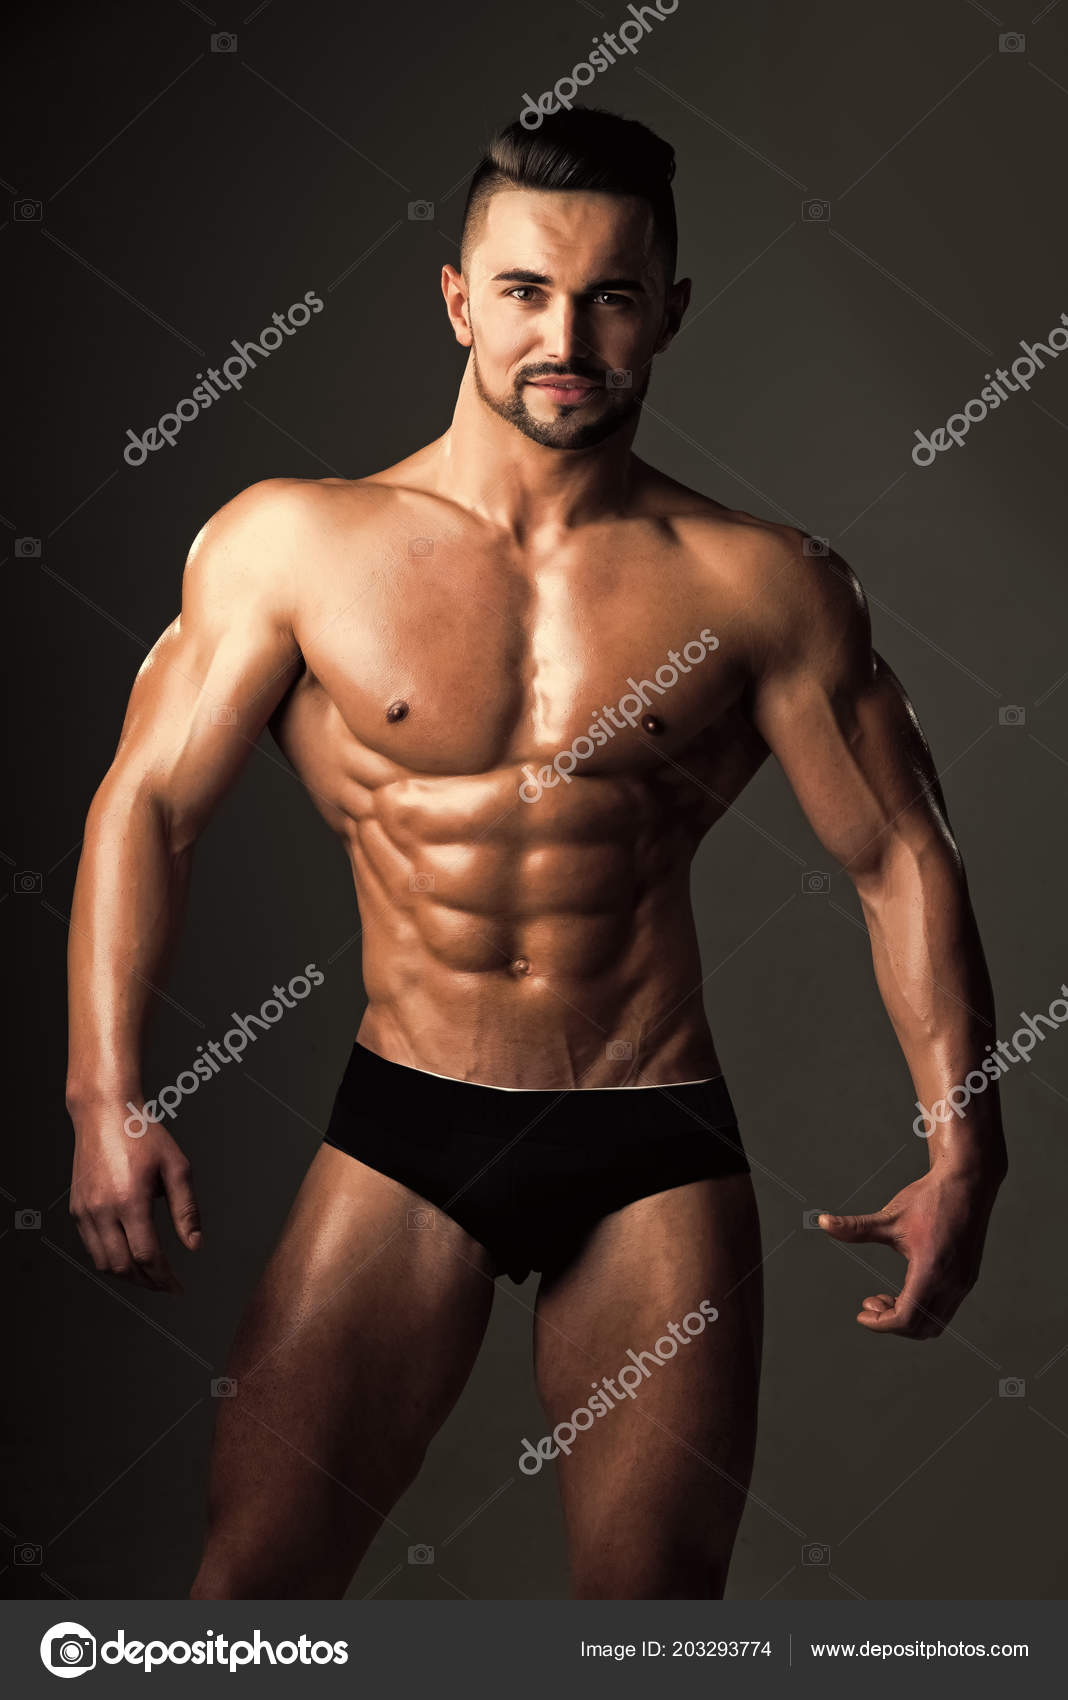 men muscle underwear